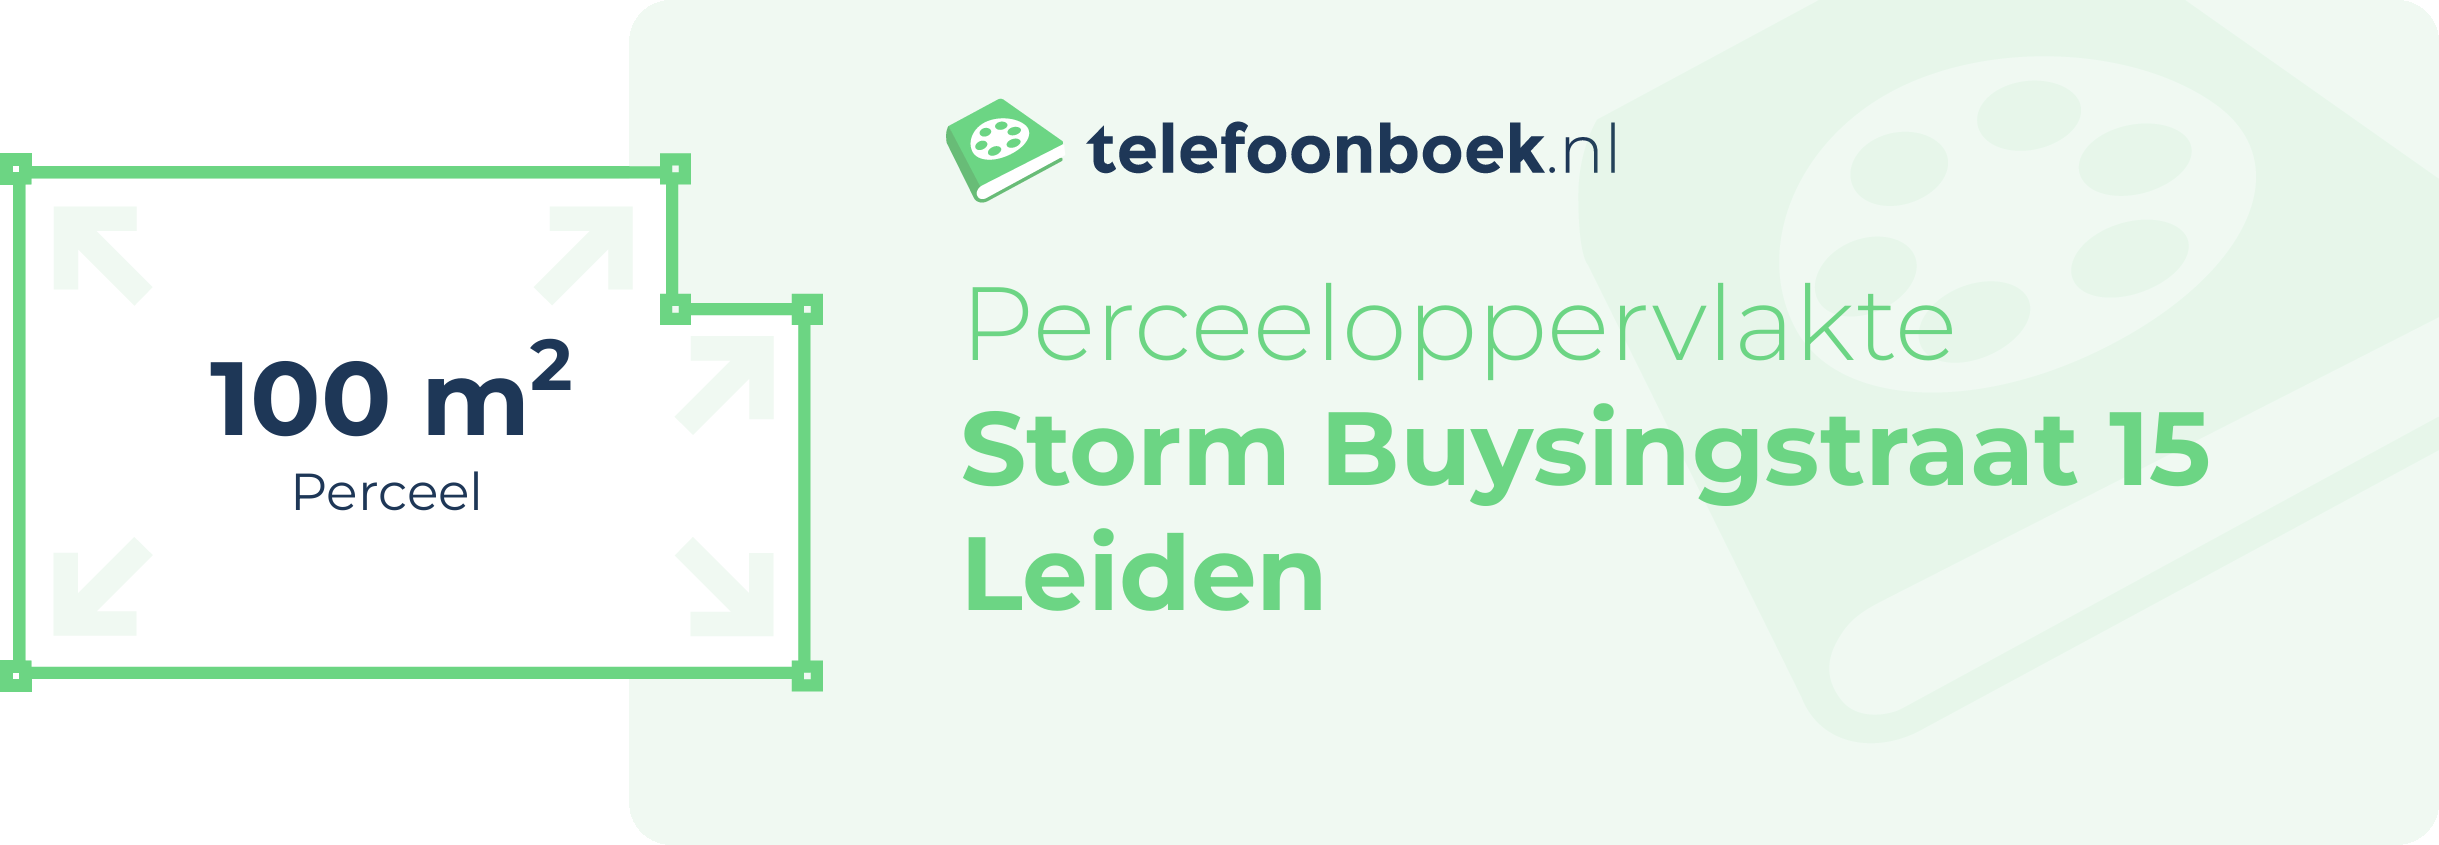 Perceeloppervlakte Storm Buysingstraat 15 Leiden